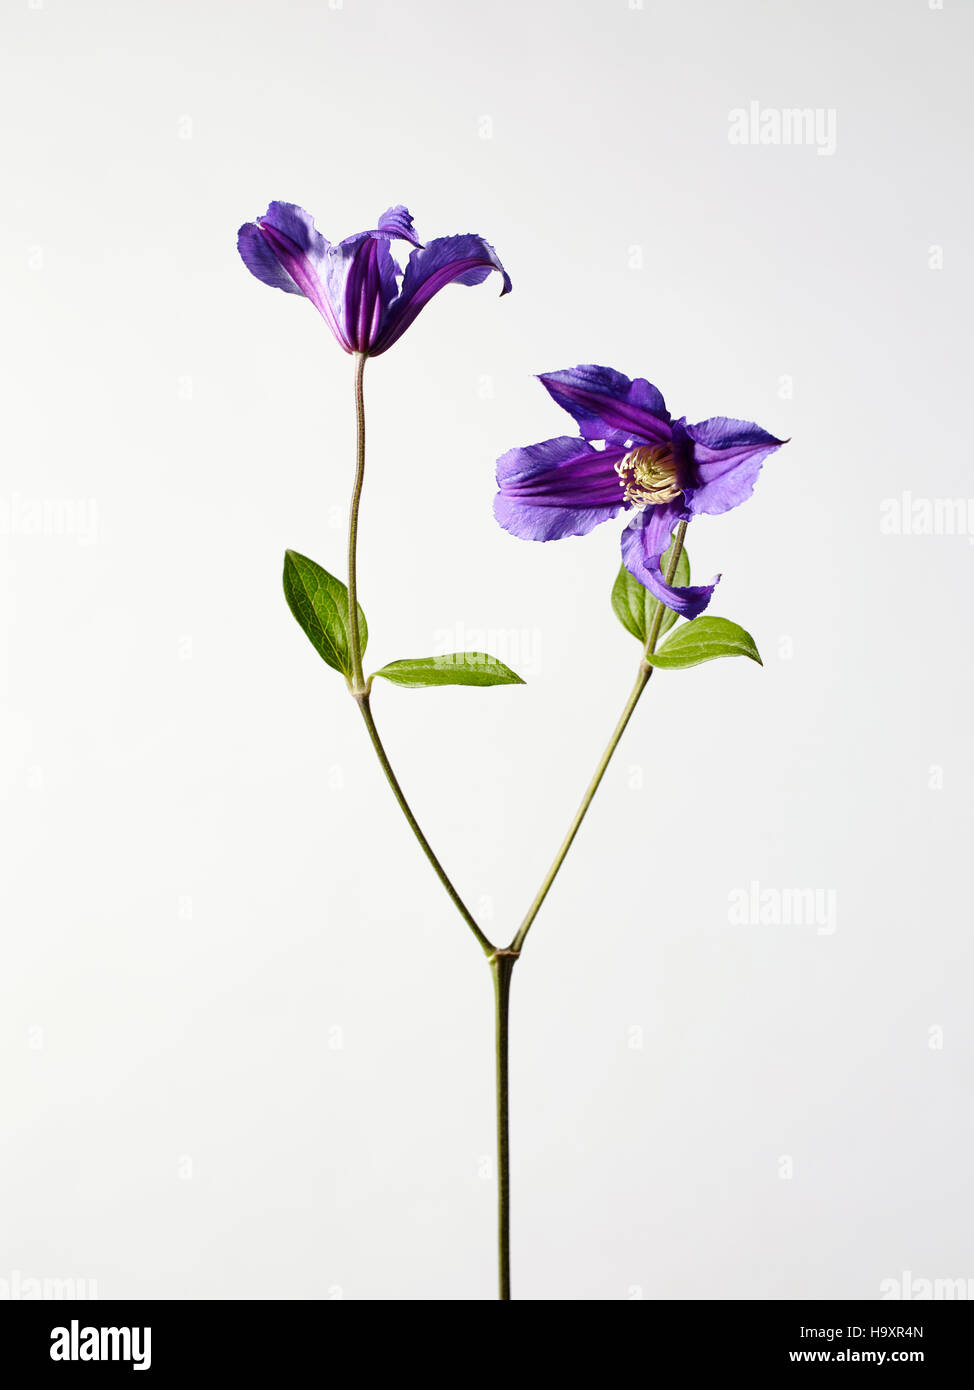 Studio Stillleben Foto von lila Clematis Blumen zwei Blütenstände, hell gefärbte Blütenblätter in voller Blüte Stockfoto